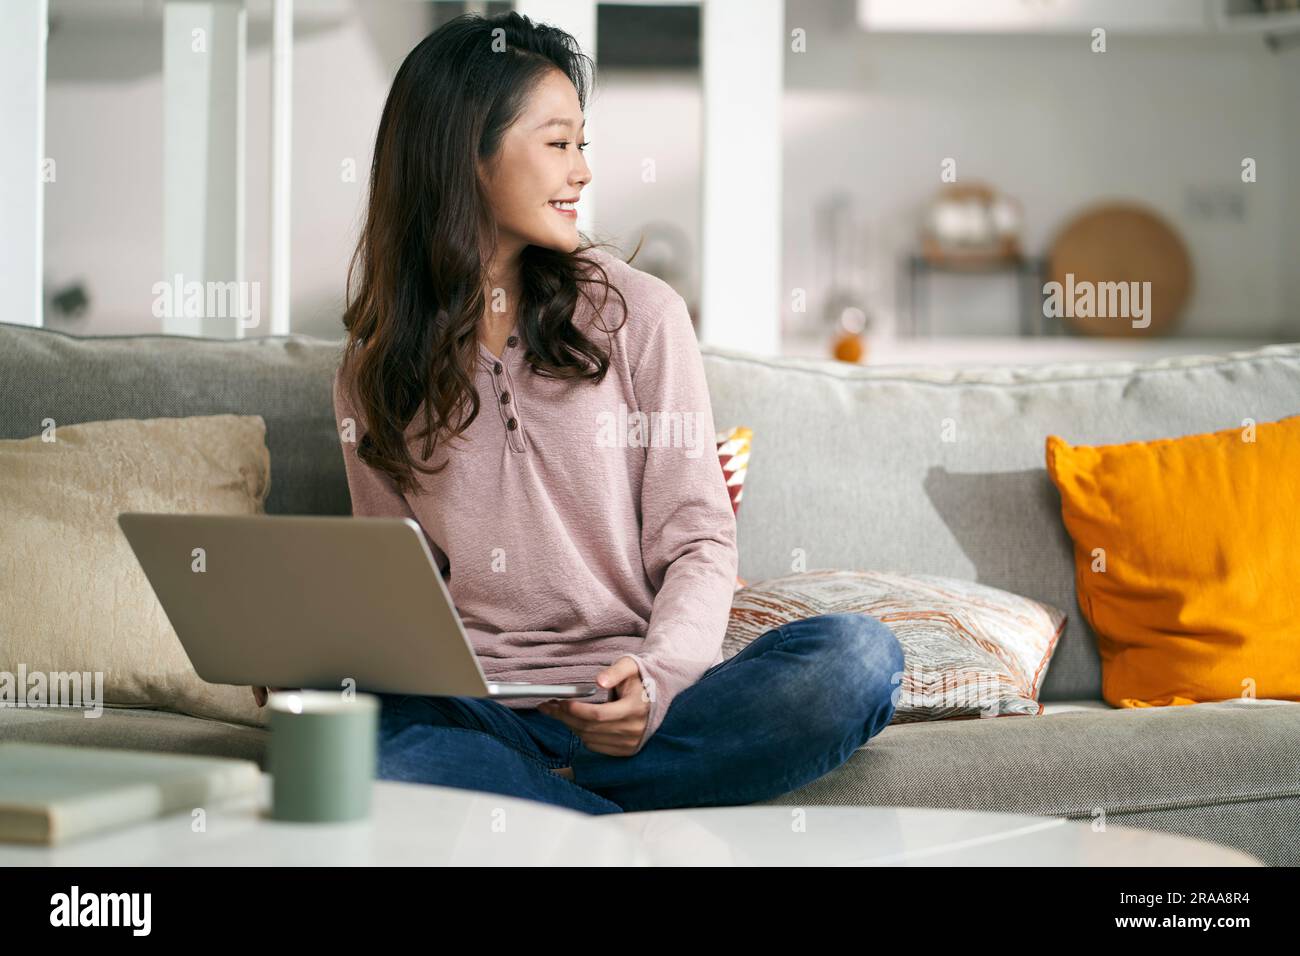 Glückliche junge asiatische Geschäftsfrau, die zu Hause auf der Couch sitzt und mit einem Laptop arbeitet Stockfoto